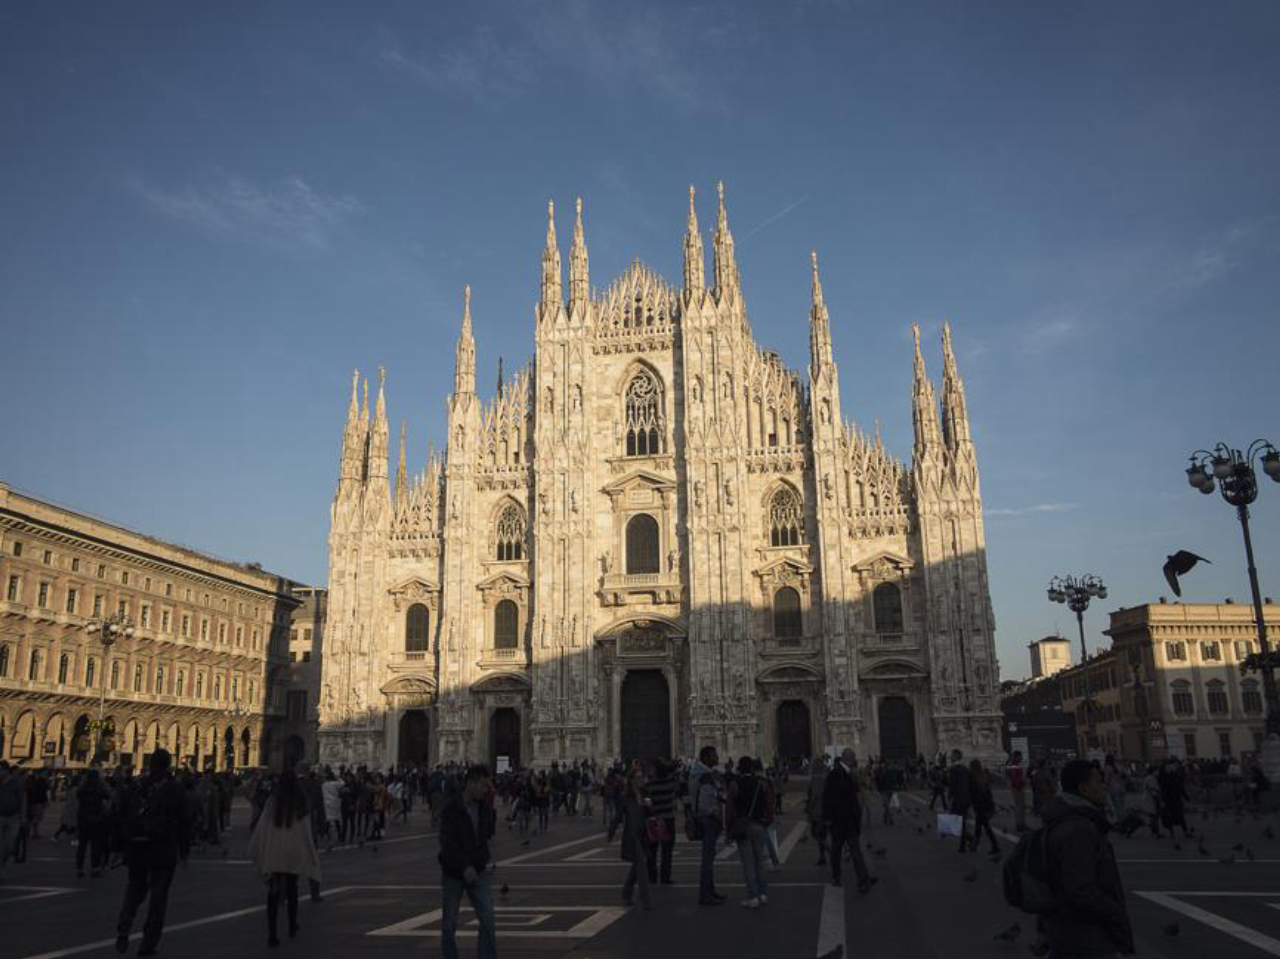 Enquanto a cidade se reinventa, o Duomo continua sendo o símbolo de Milão. Fotos: Mariana Quintana.